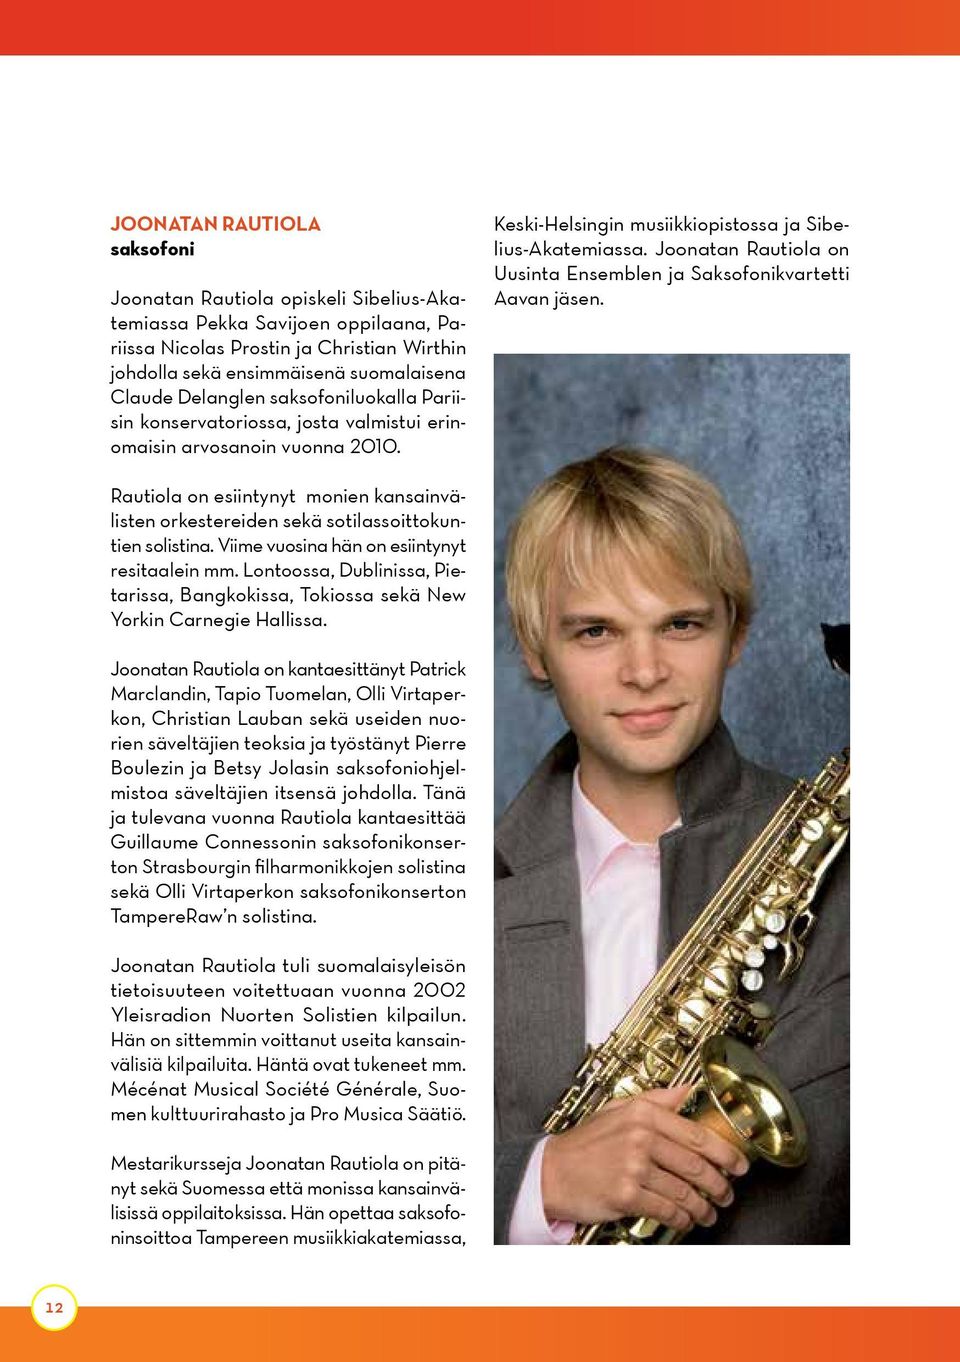 Joonatan Rautiola on Uusinta Ensemblen ja Saksofonikvartetti Aavan jäsen. Rautiola on esiintynyt monien kansainvälisten orkestereiden sekä sotilassoittokuntien solistina.